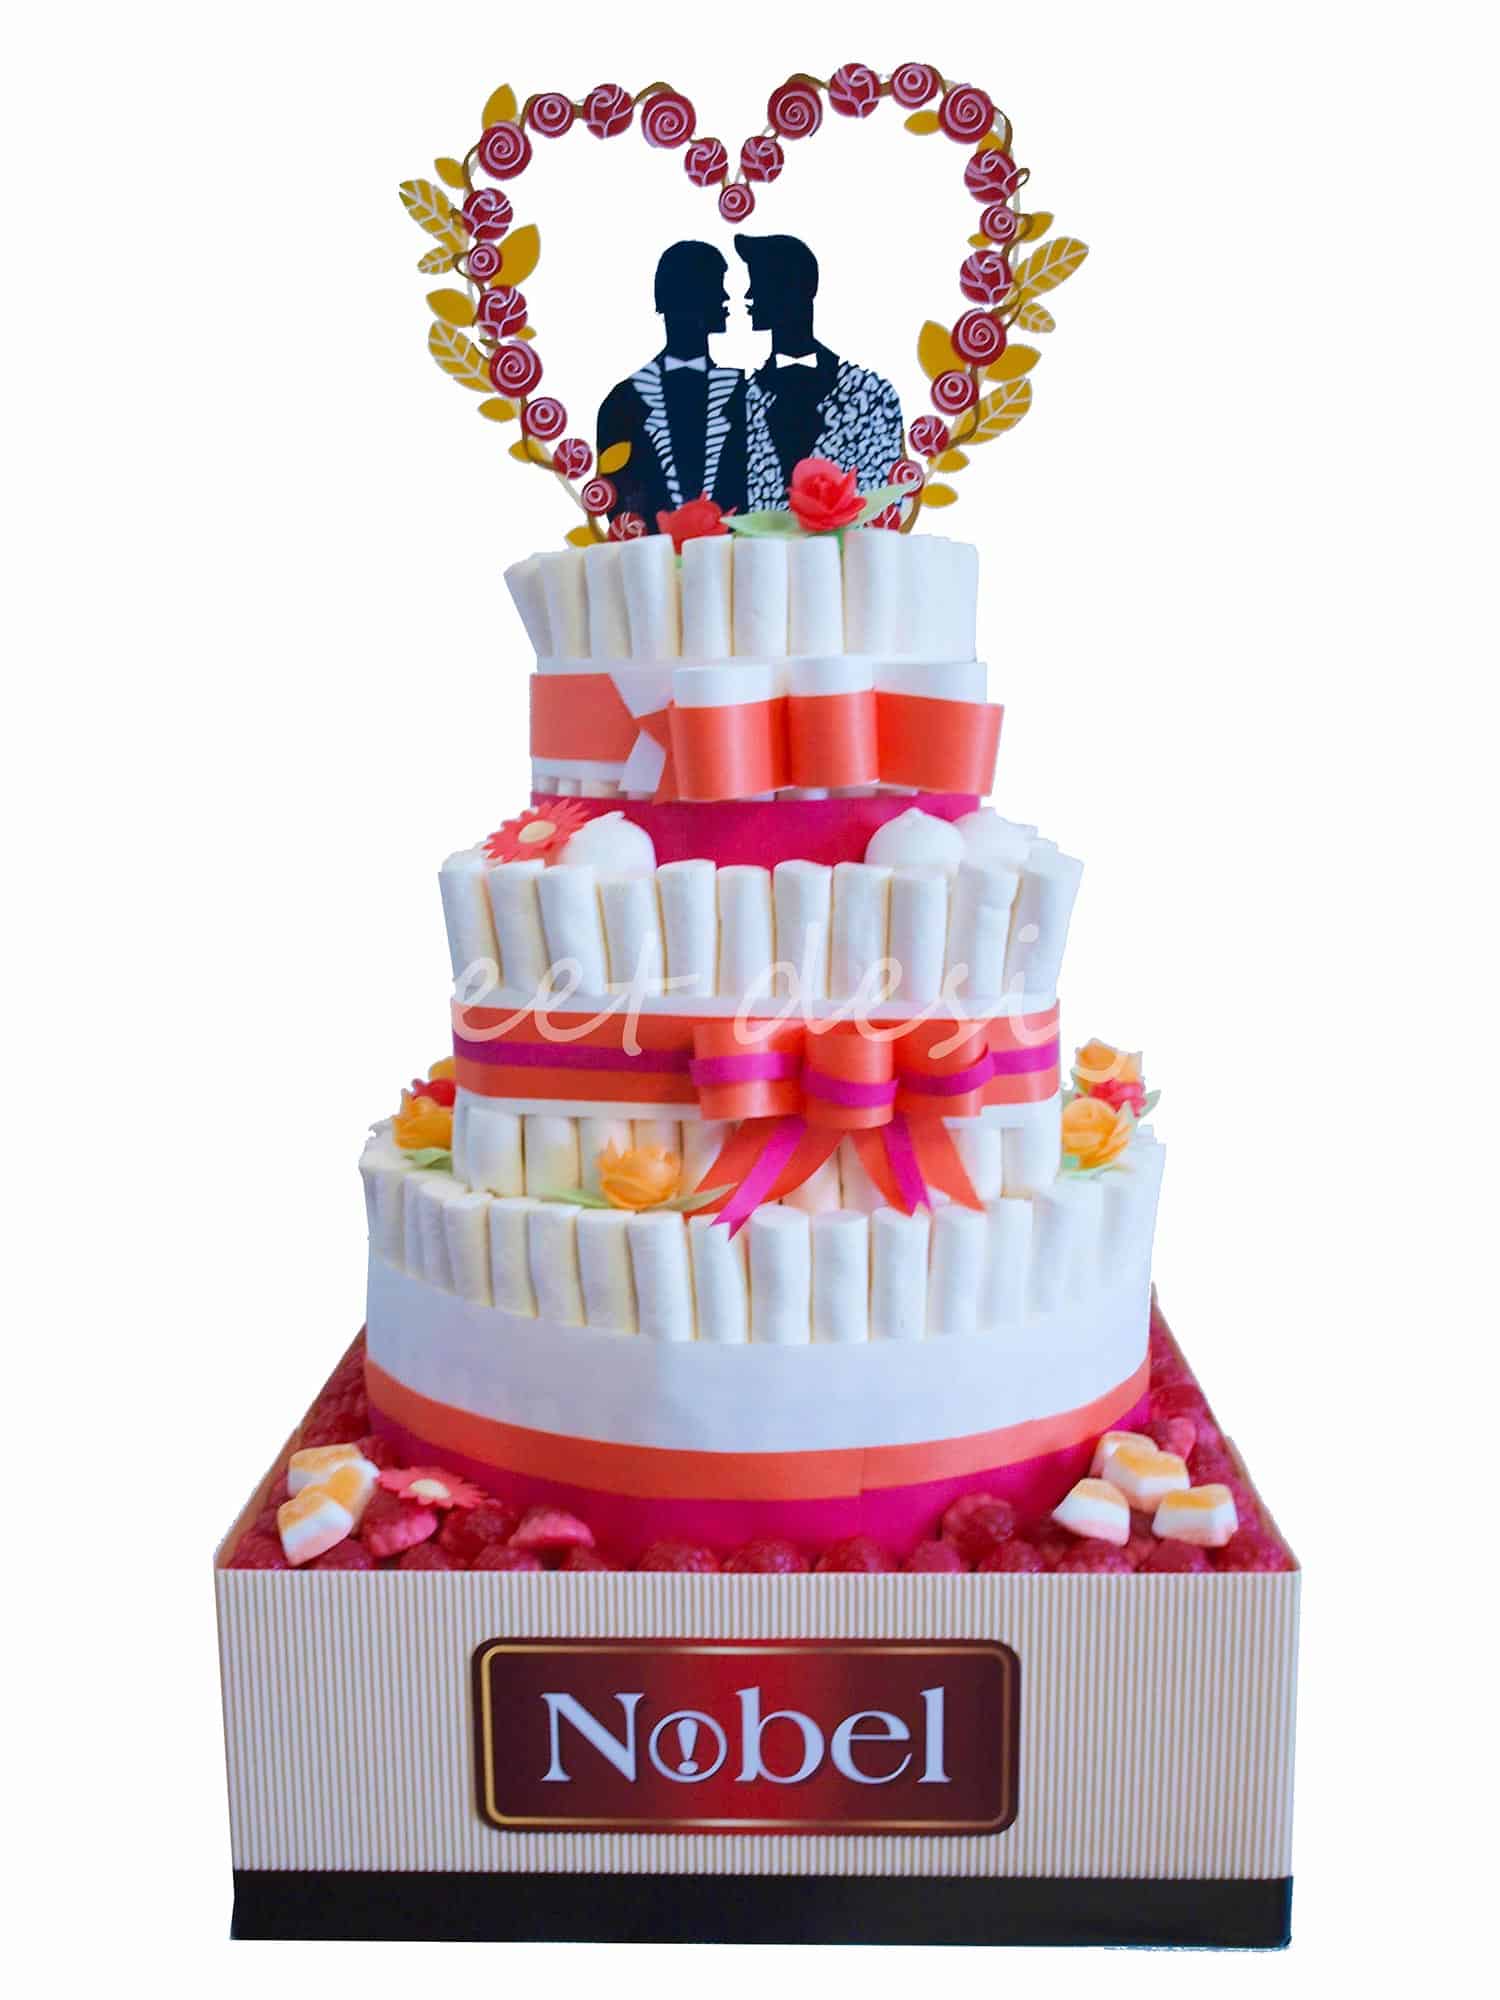 Tarta de Chuches para Acción Promocional de Nobel - Sweet Design